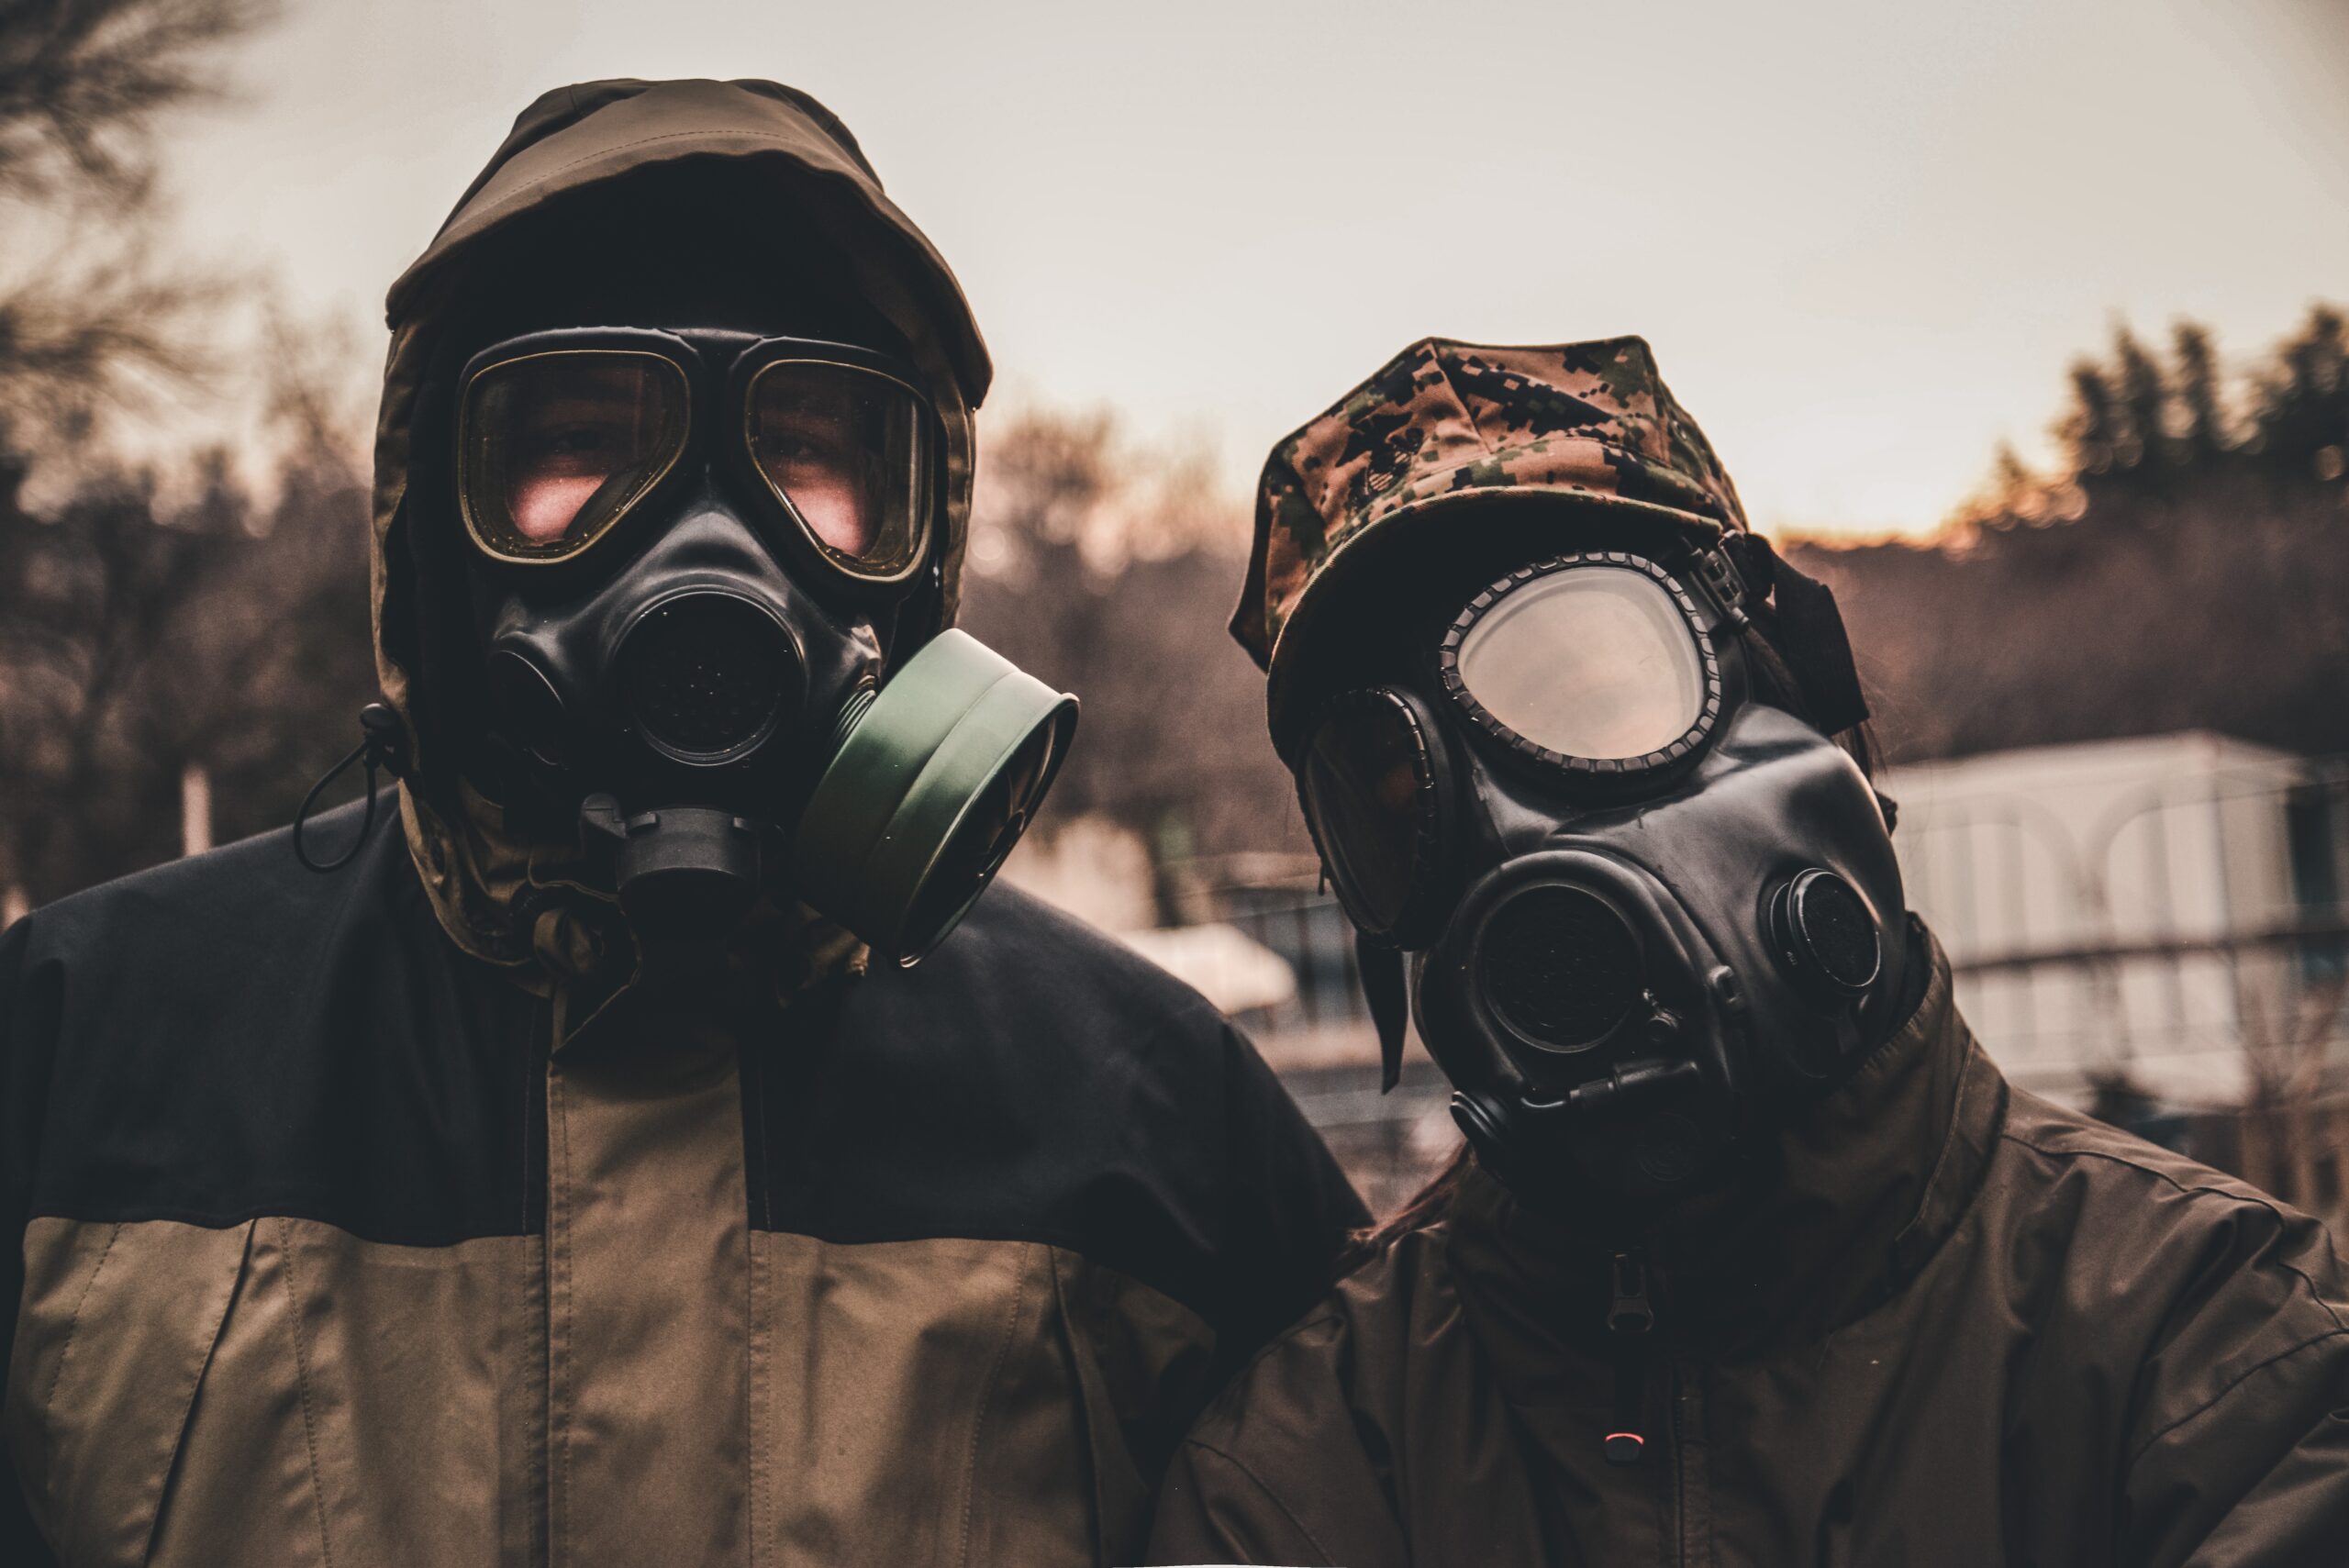 2 people wearing gas masks